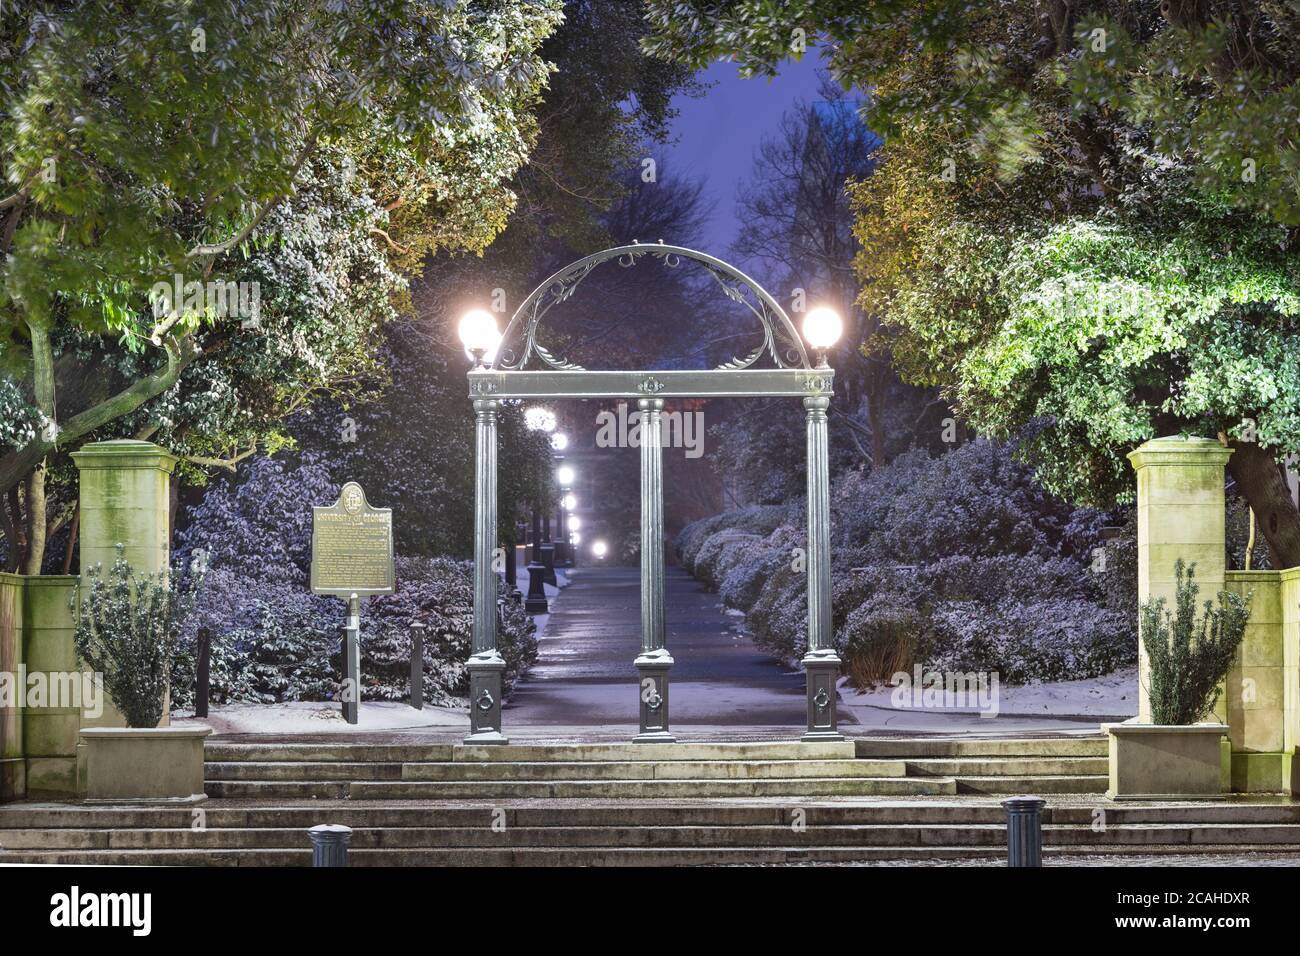 ATENE, GEORGIA - 17 GENNAIO 2018: L'arco del campus dell'Università della Georgia con lo storico indicatore di stato in inverno a twilightl. Foto Stock